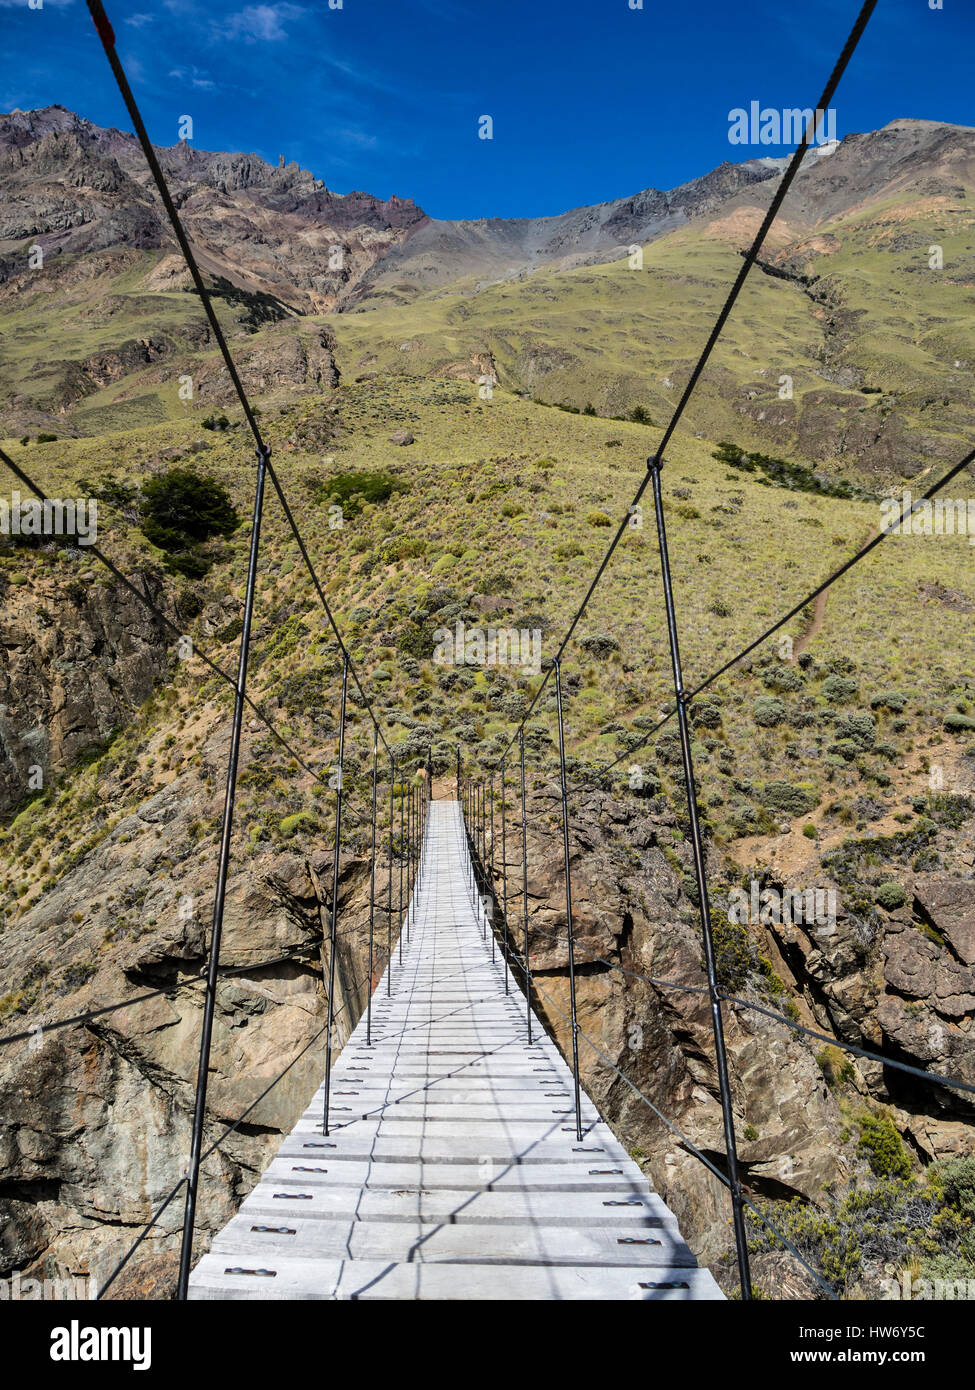 Suspension Bridge crossing river Rio Aviles, sentier de randonnée pédestre 'boucle' Aviles, Parc de la Patagonie, la Patagonie, Chili Banque D'Images